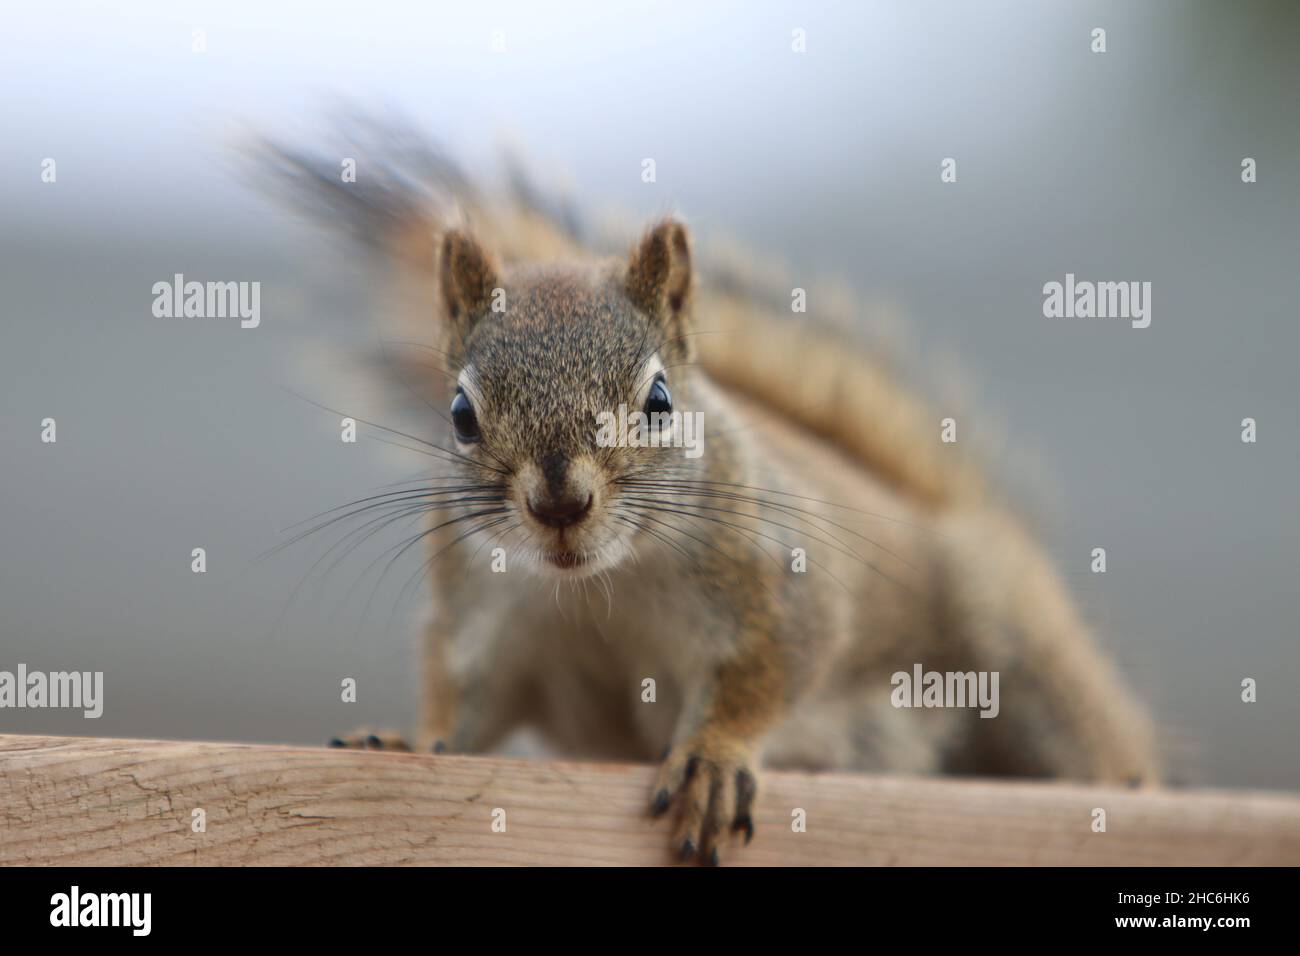 Nahaufnahme eines niedlichen kleinen Eichhörnchens, das auf einem Holzschreibtisch steht und direkt zur Kamera schaut Stockfoto